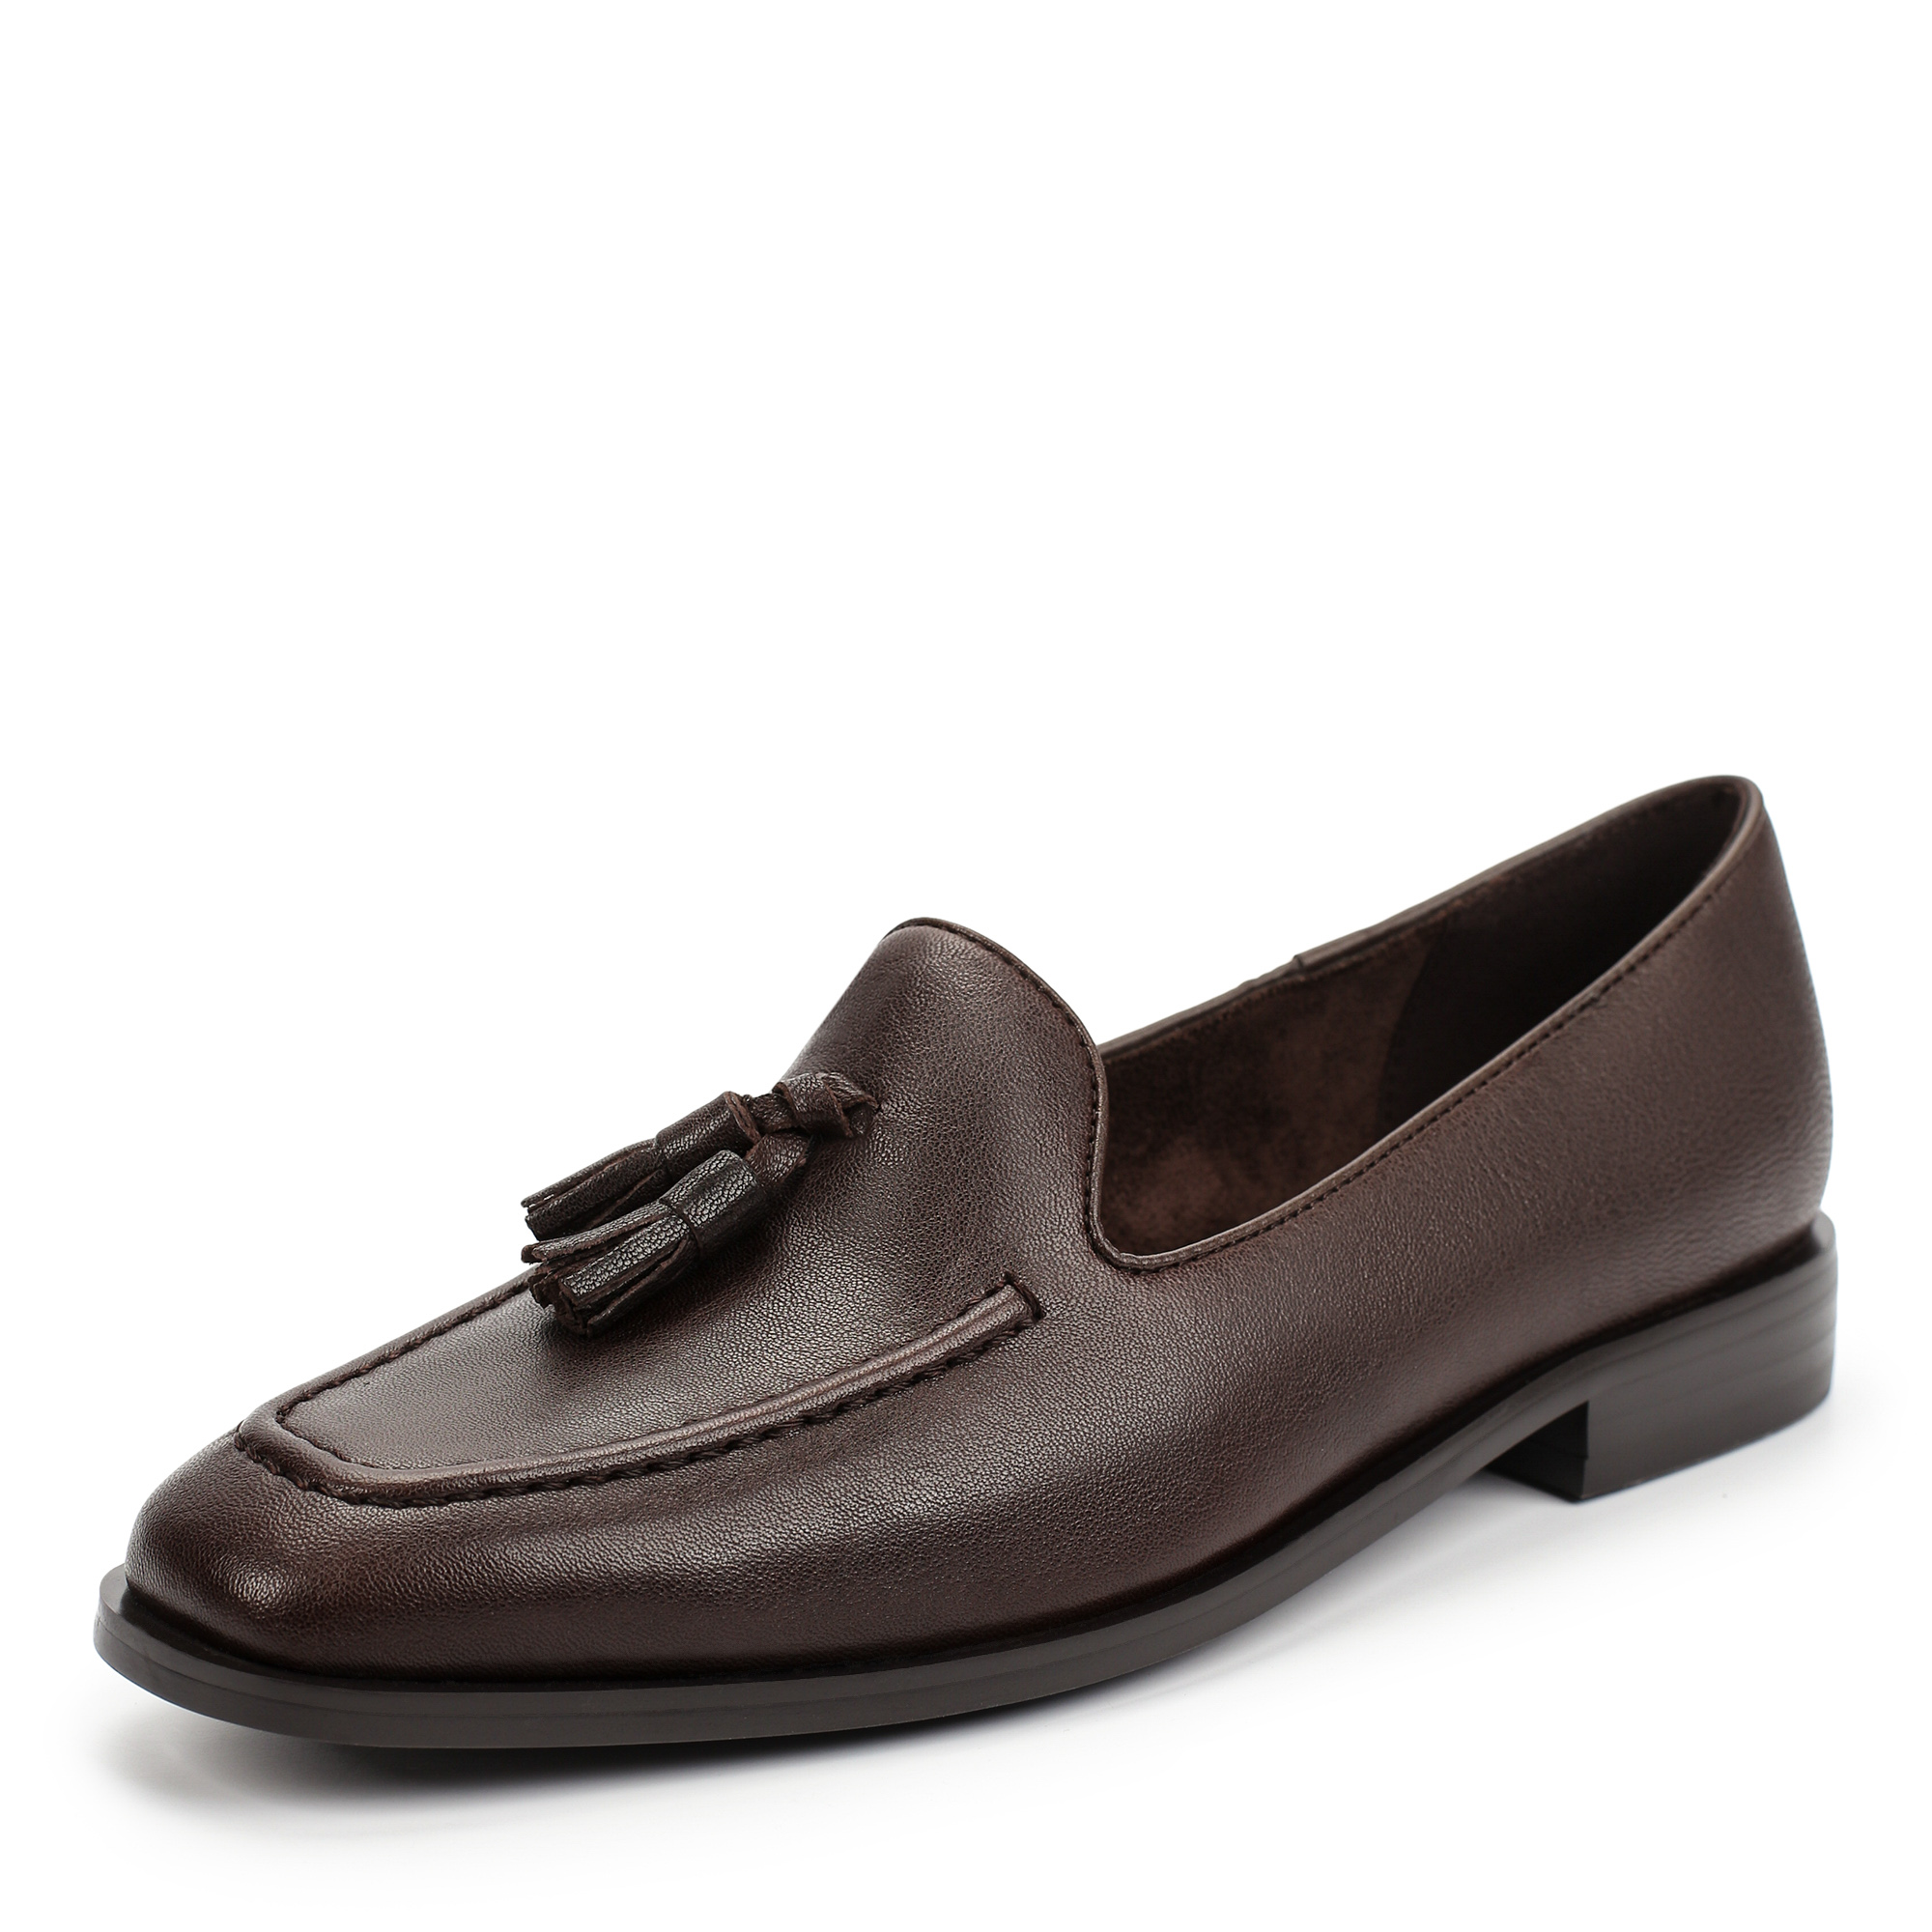 Туфли Thomas Munz 233-879A-2109, цвет темно-коричневый, размер 38 - фото 2